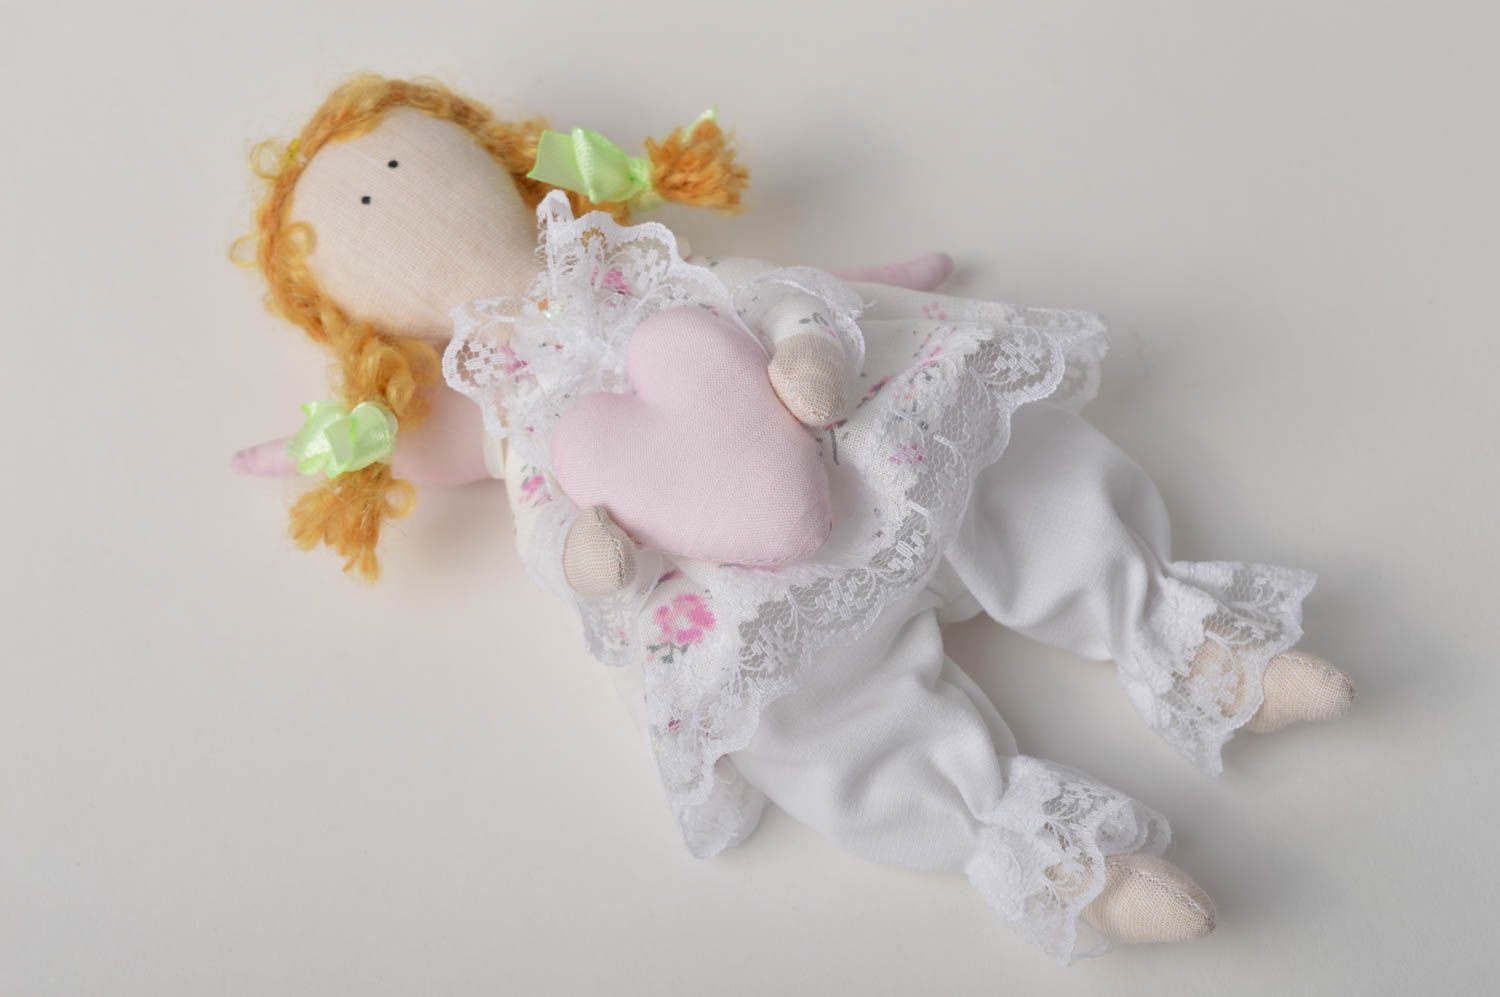 Handmade doll designer doll for baby fabric doll gift for girl nursery decor photo 2